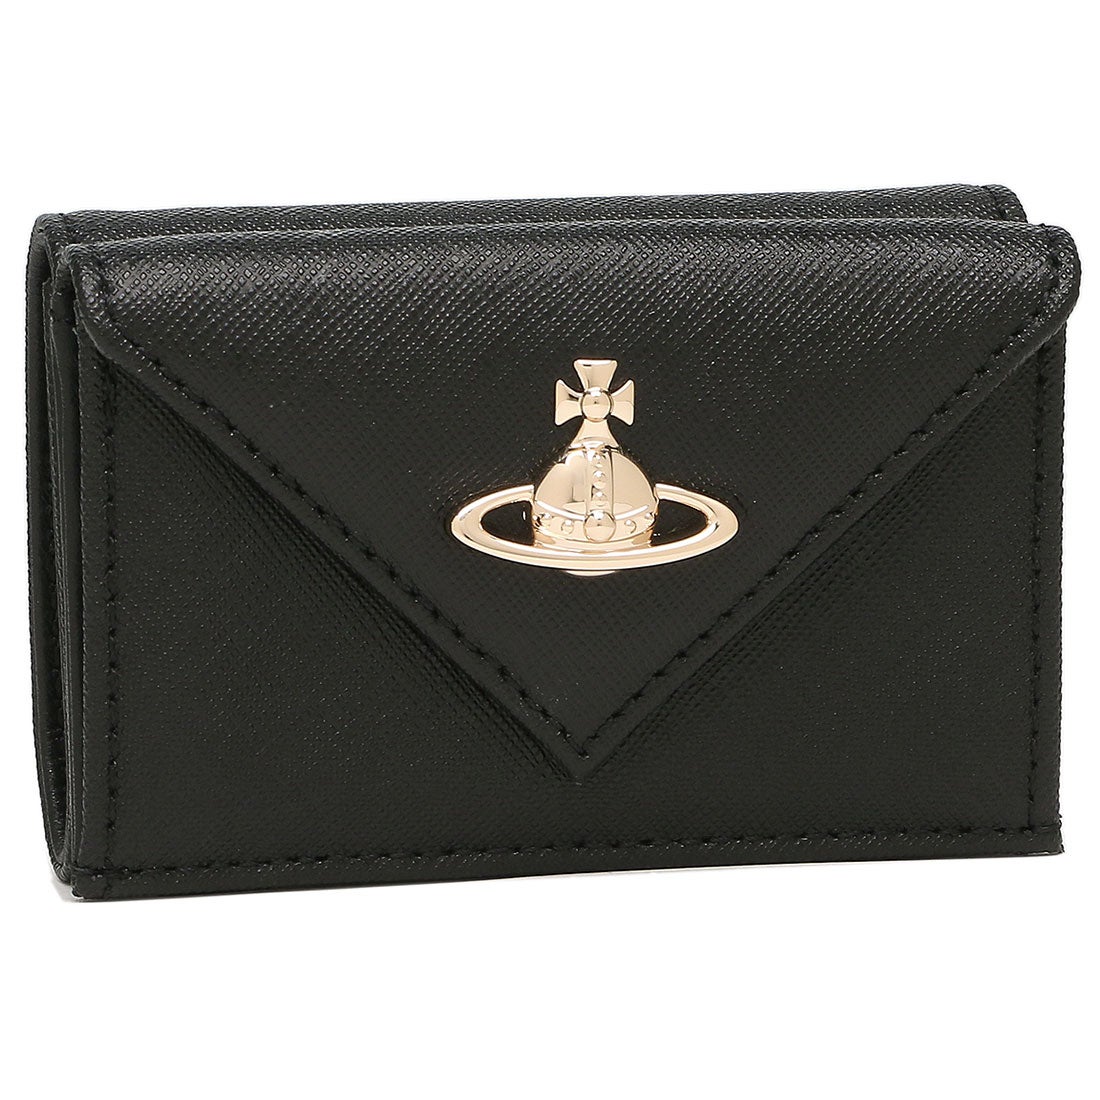 【新品未使用】VIvienne Westwood  三つ折り財布